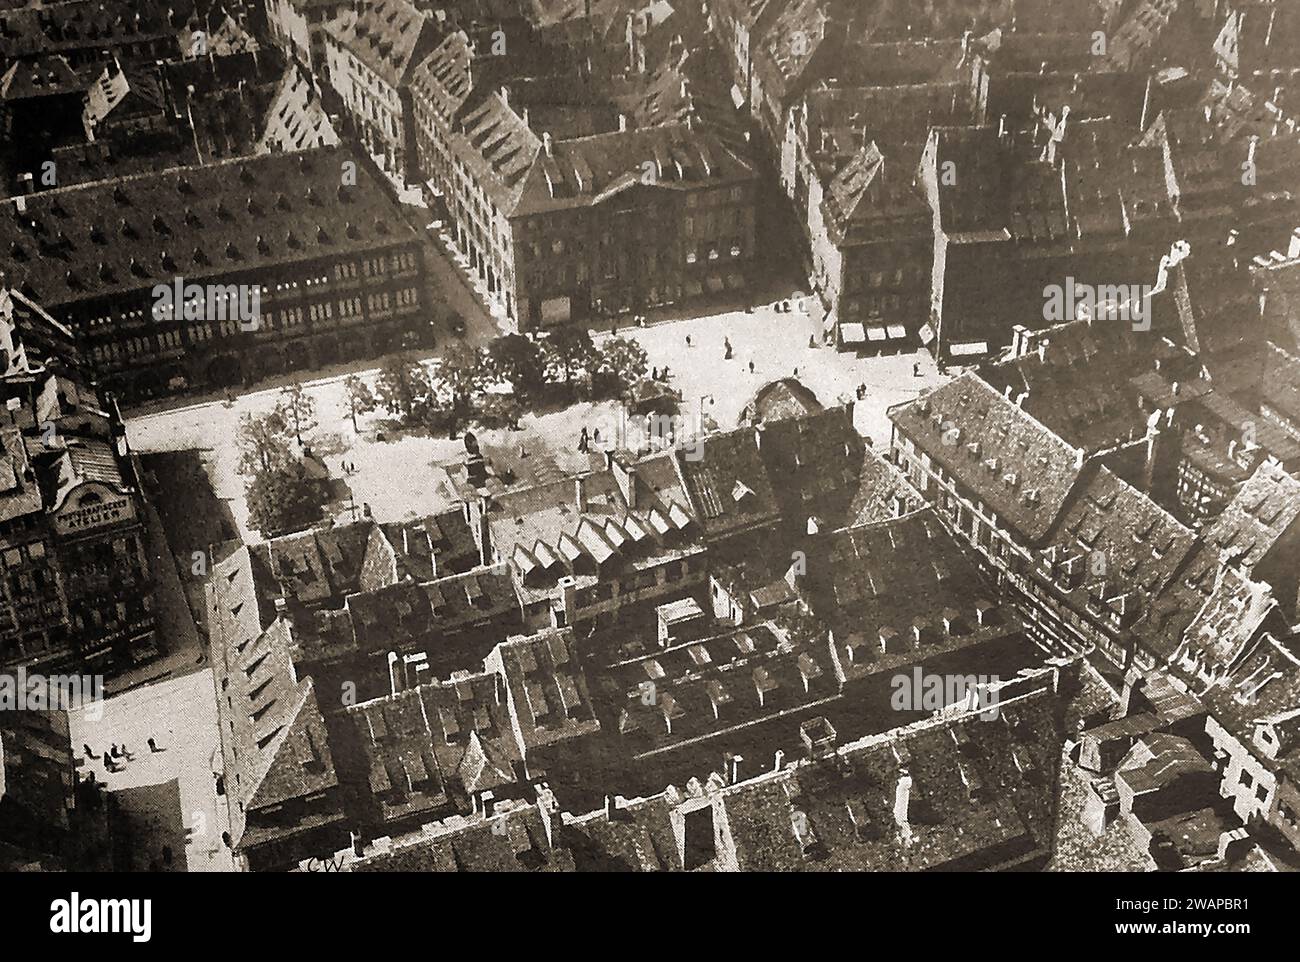 Frankreich 1939 - Blick auf Straßburg vom Domturm - Frankreich 1939 - Une vue de Strasbourg depuis la Tour de la Cathédrale - Stockfoto